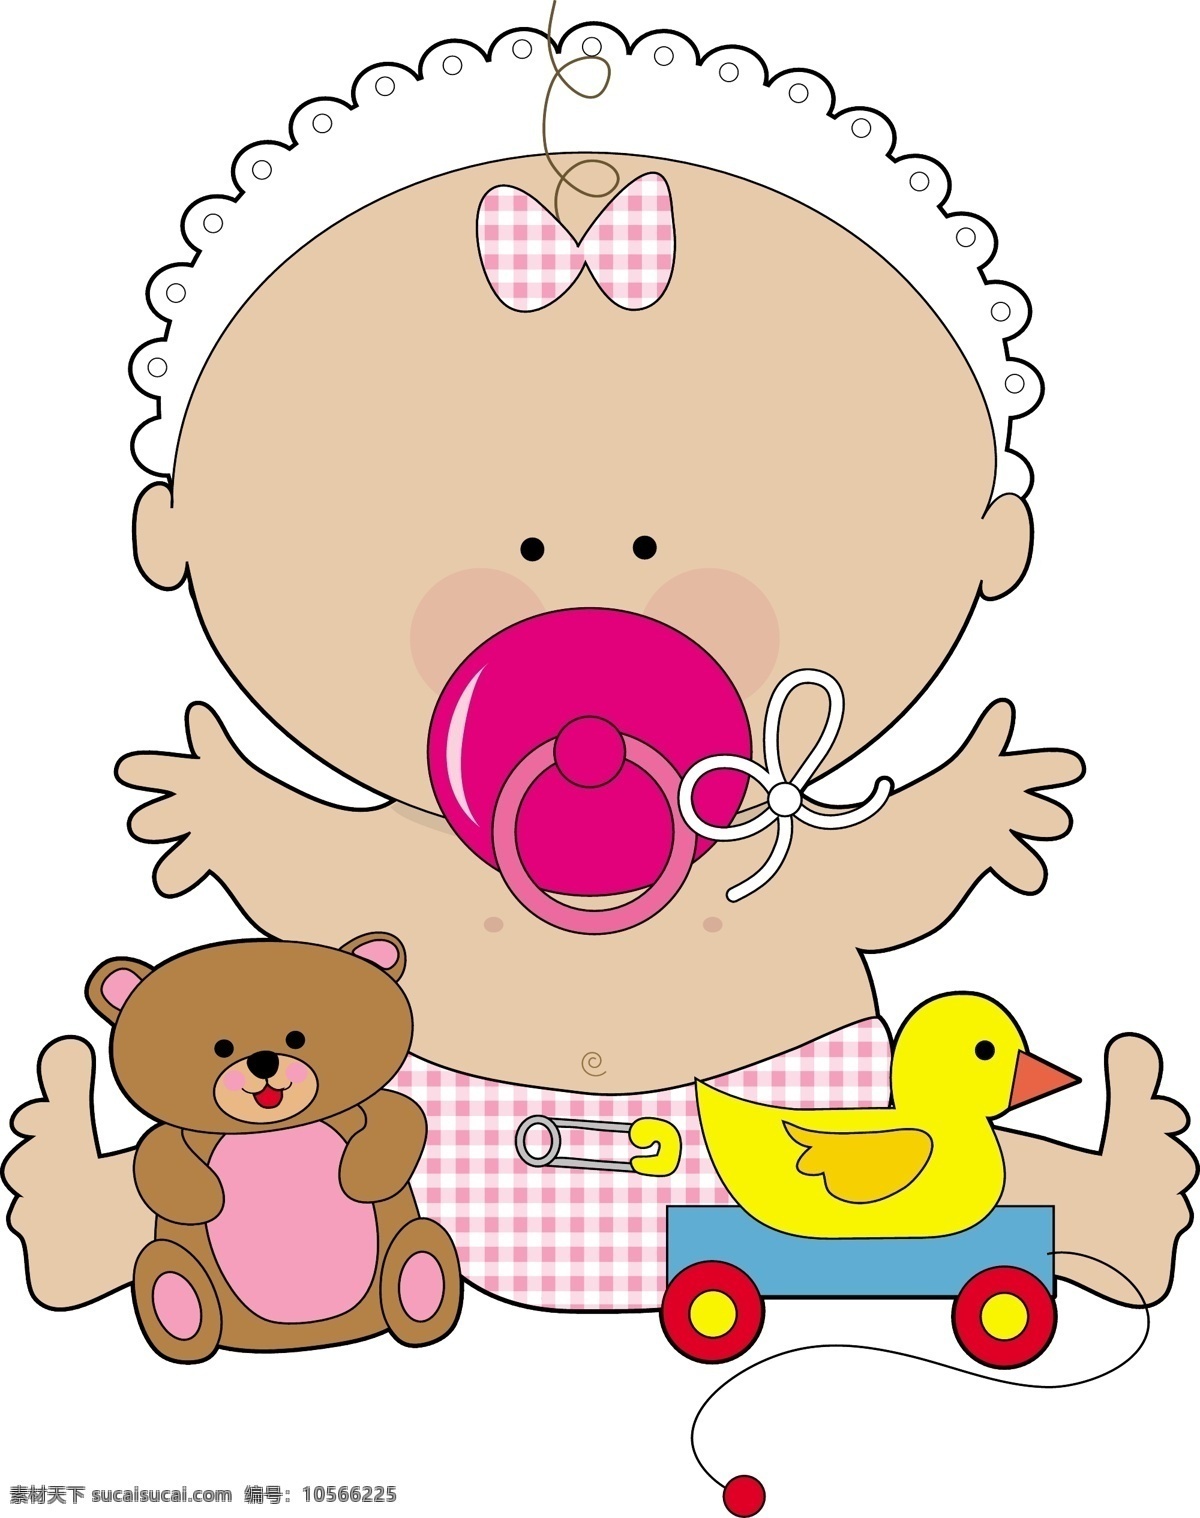 国外 可爱 婴儿 矢量 可爱的 可爱的宝宝 可爱的婴儿 婴儿外 外国的 可爱的婴儿外 图形 可爱宝贝图片 宝宝 免费 自由 其他矢量图